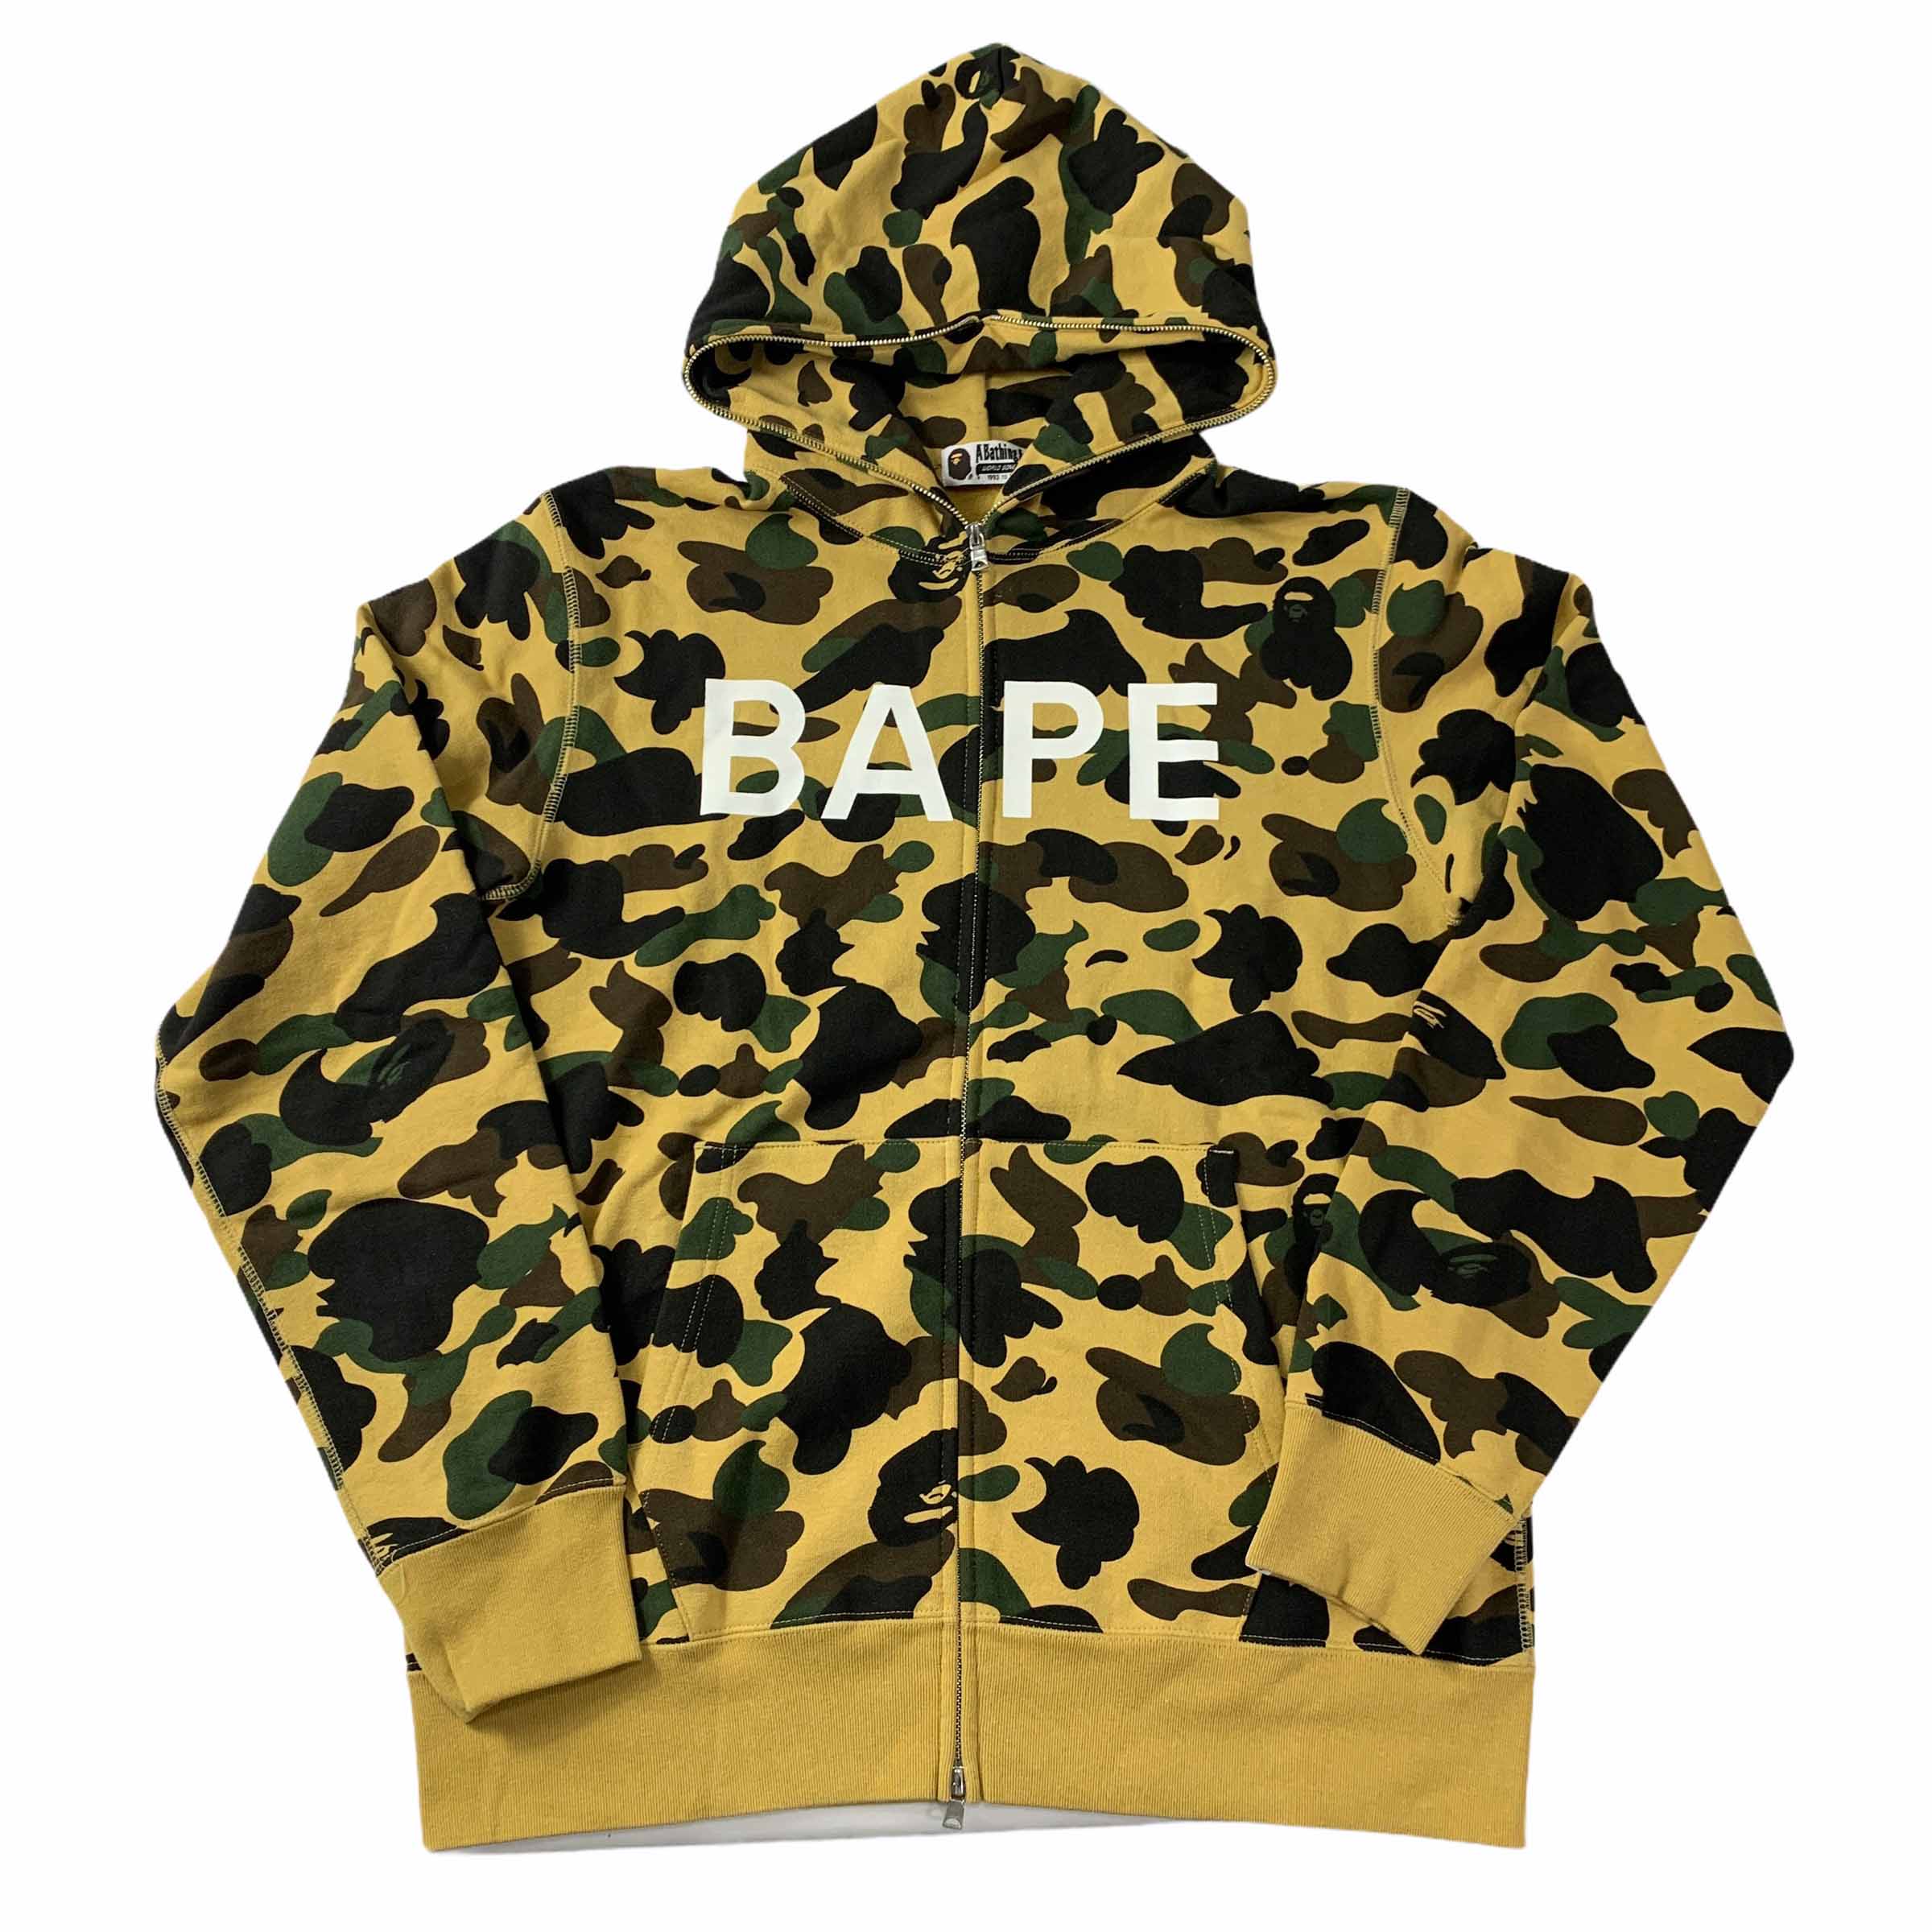 [Bape] Camo hooded zip-up - Size XL